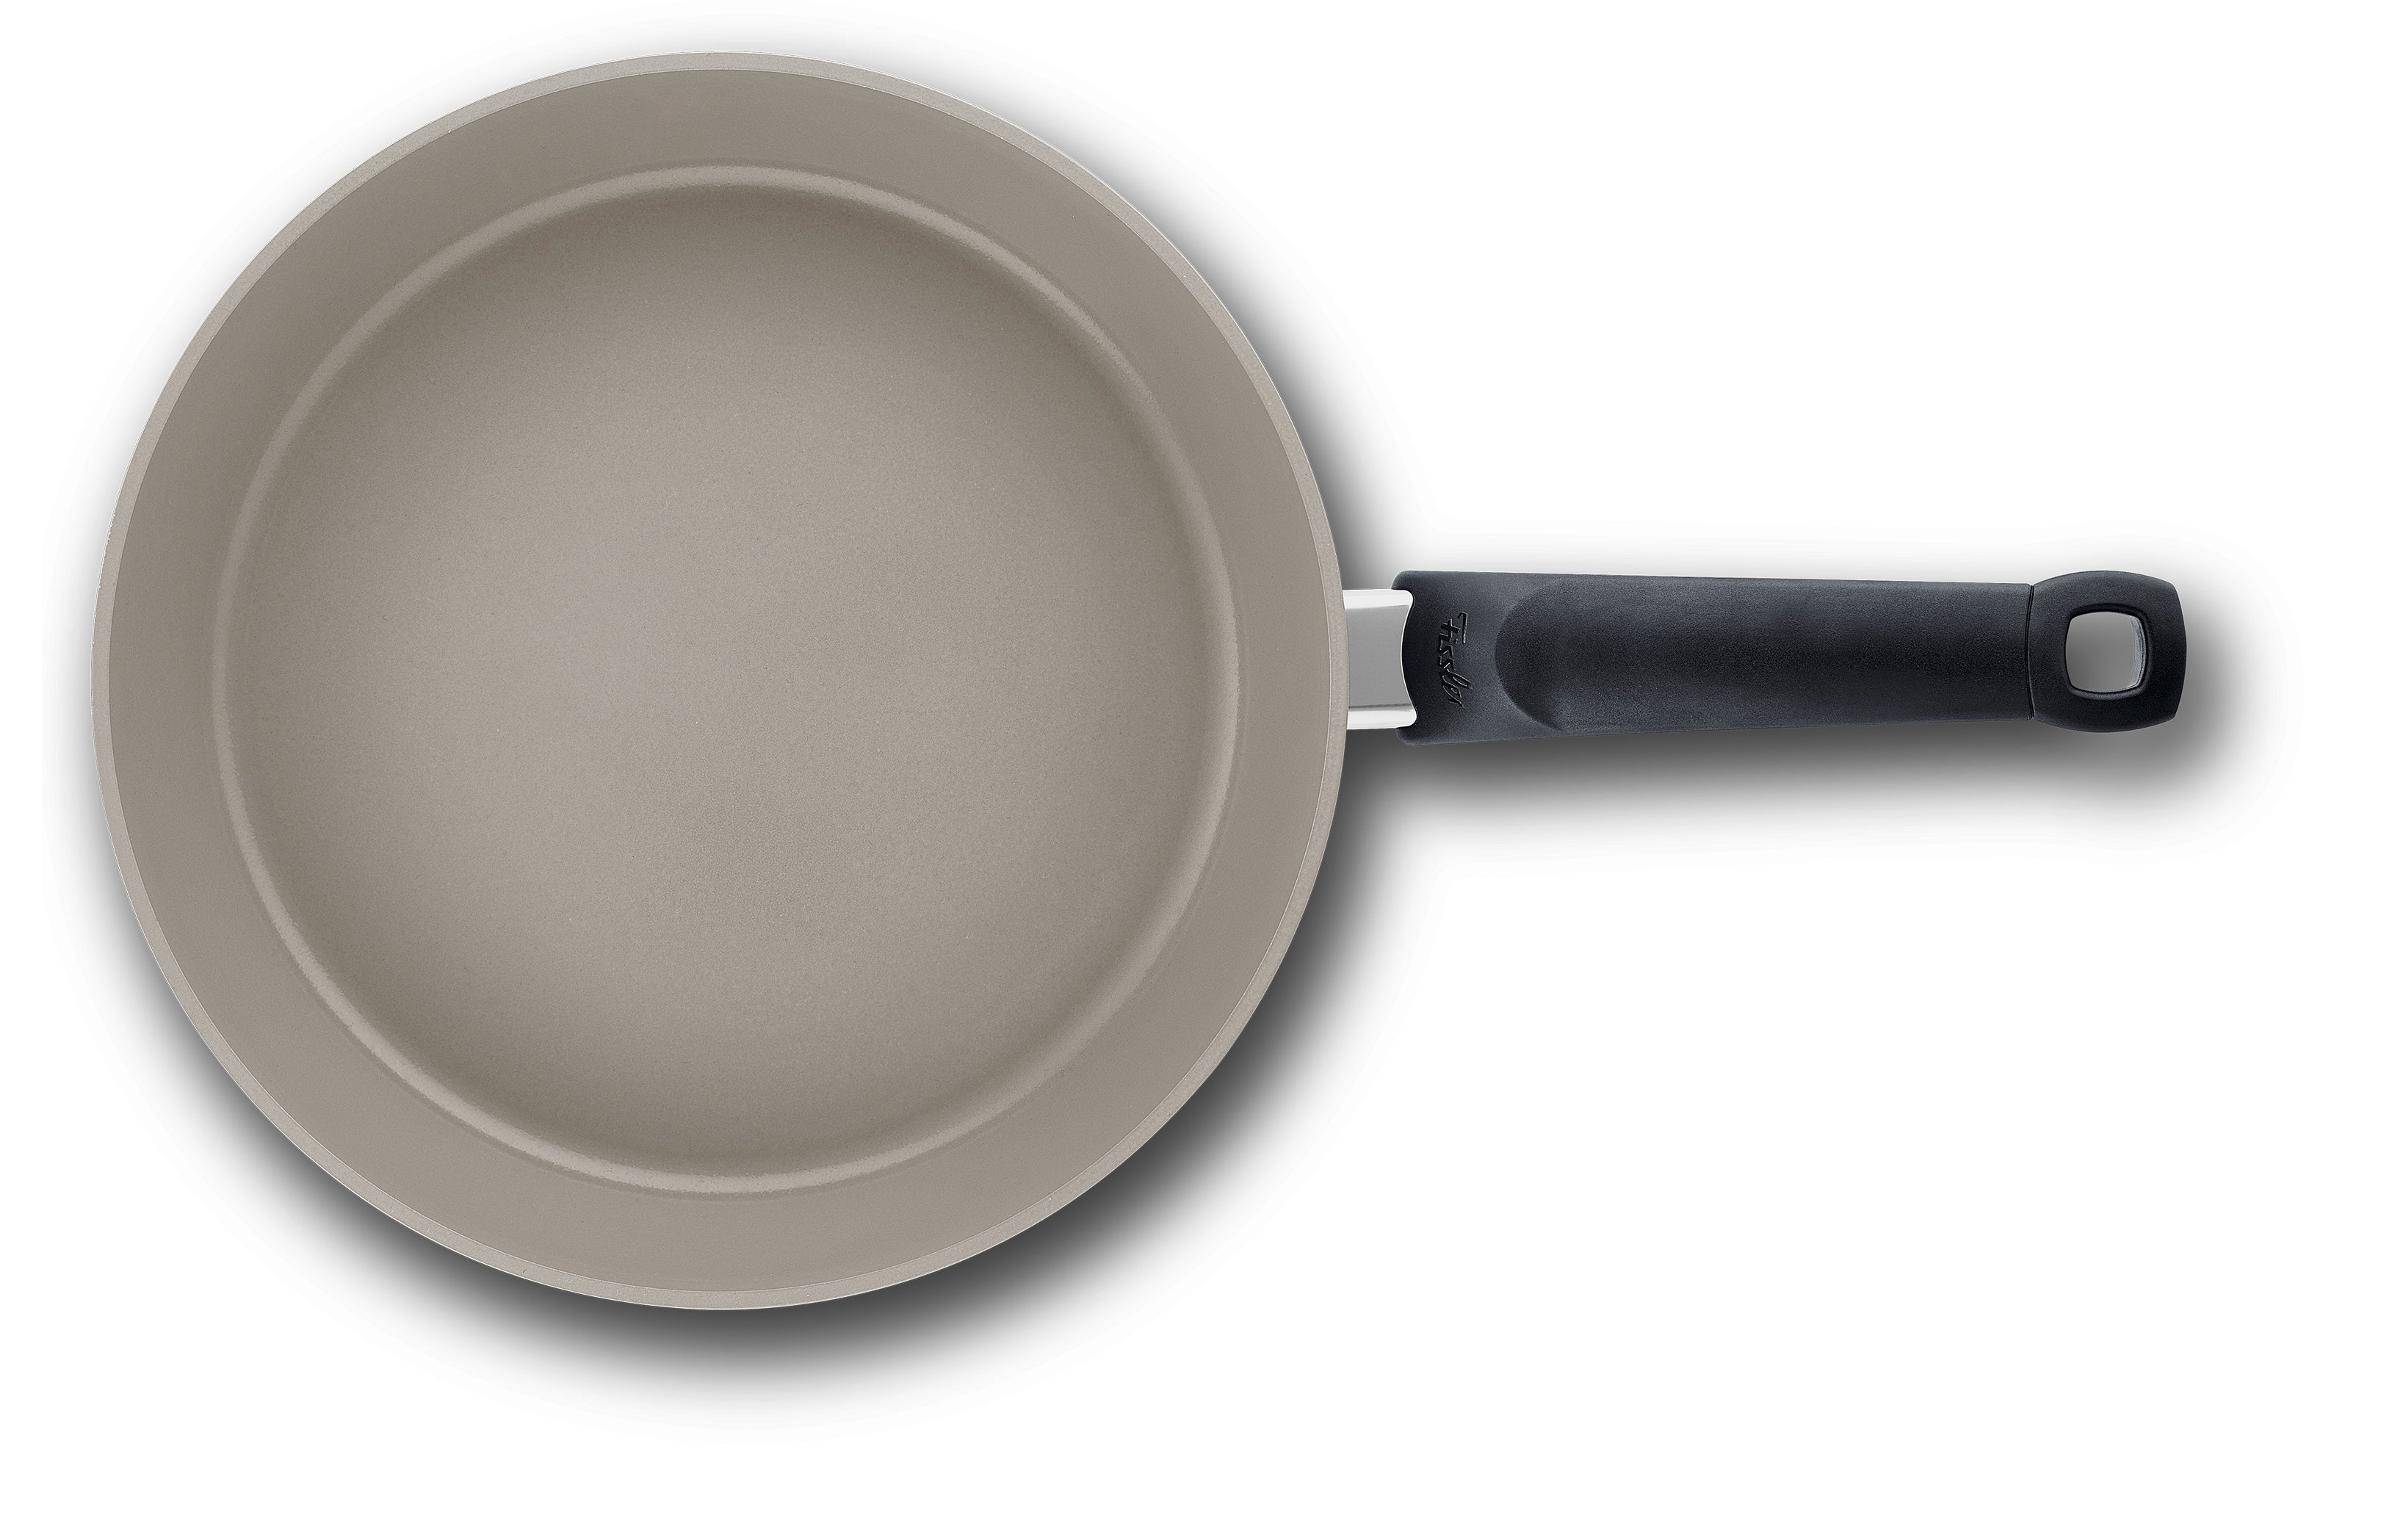 Fissler - Ceratal® Comfort frying pan - The Healthy Frying Pan ™ - 10.2 Inch